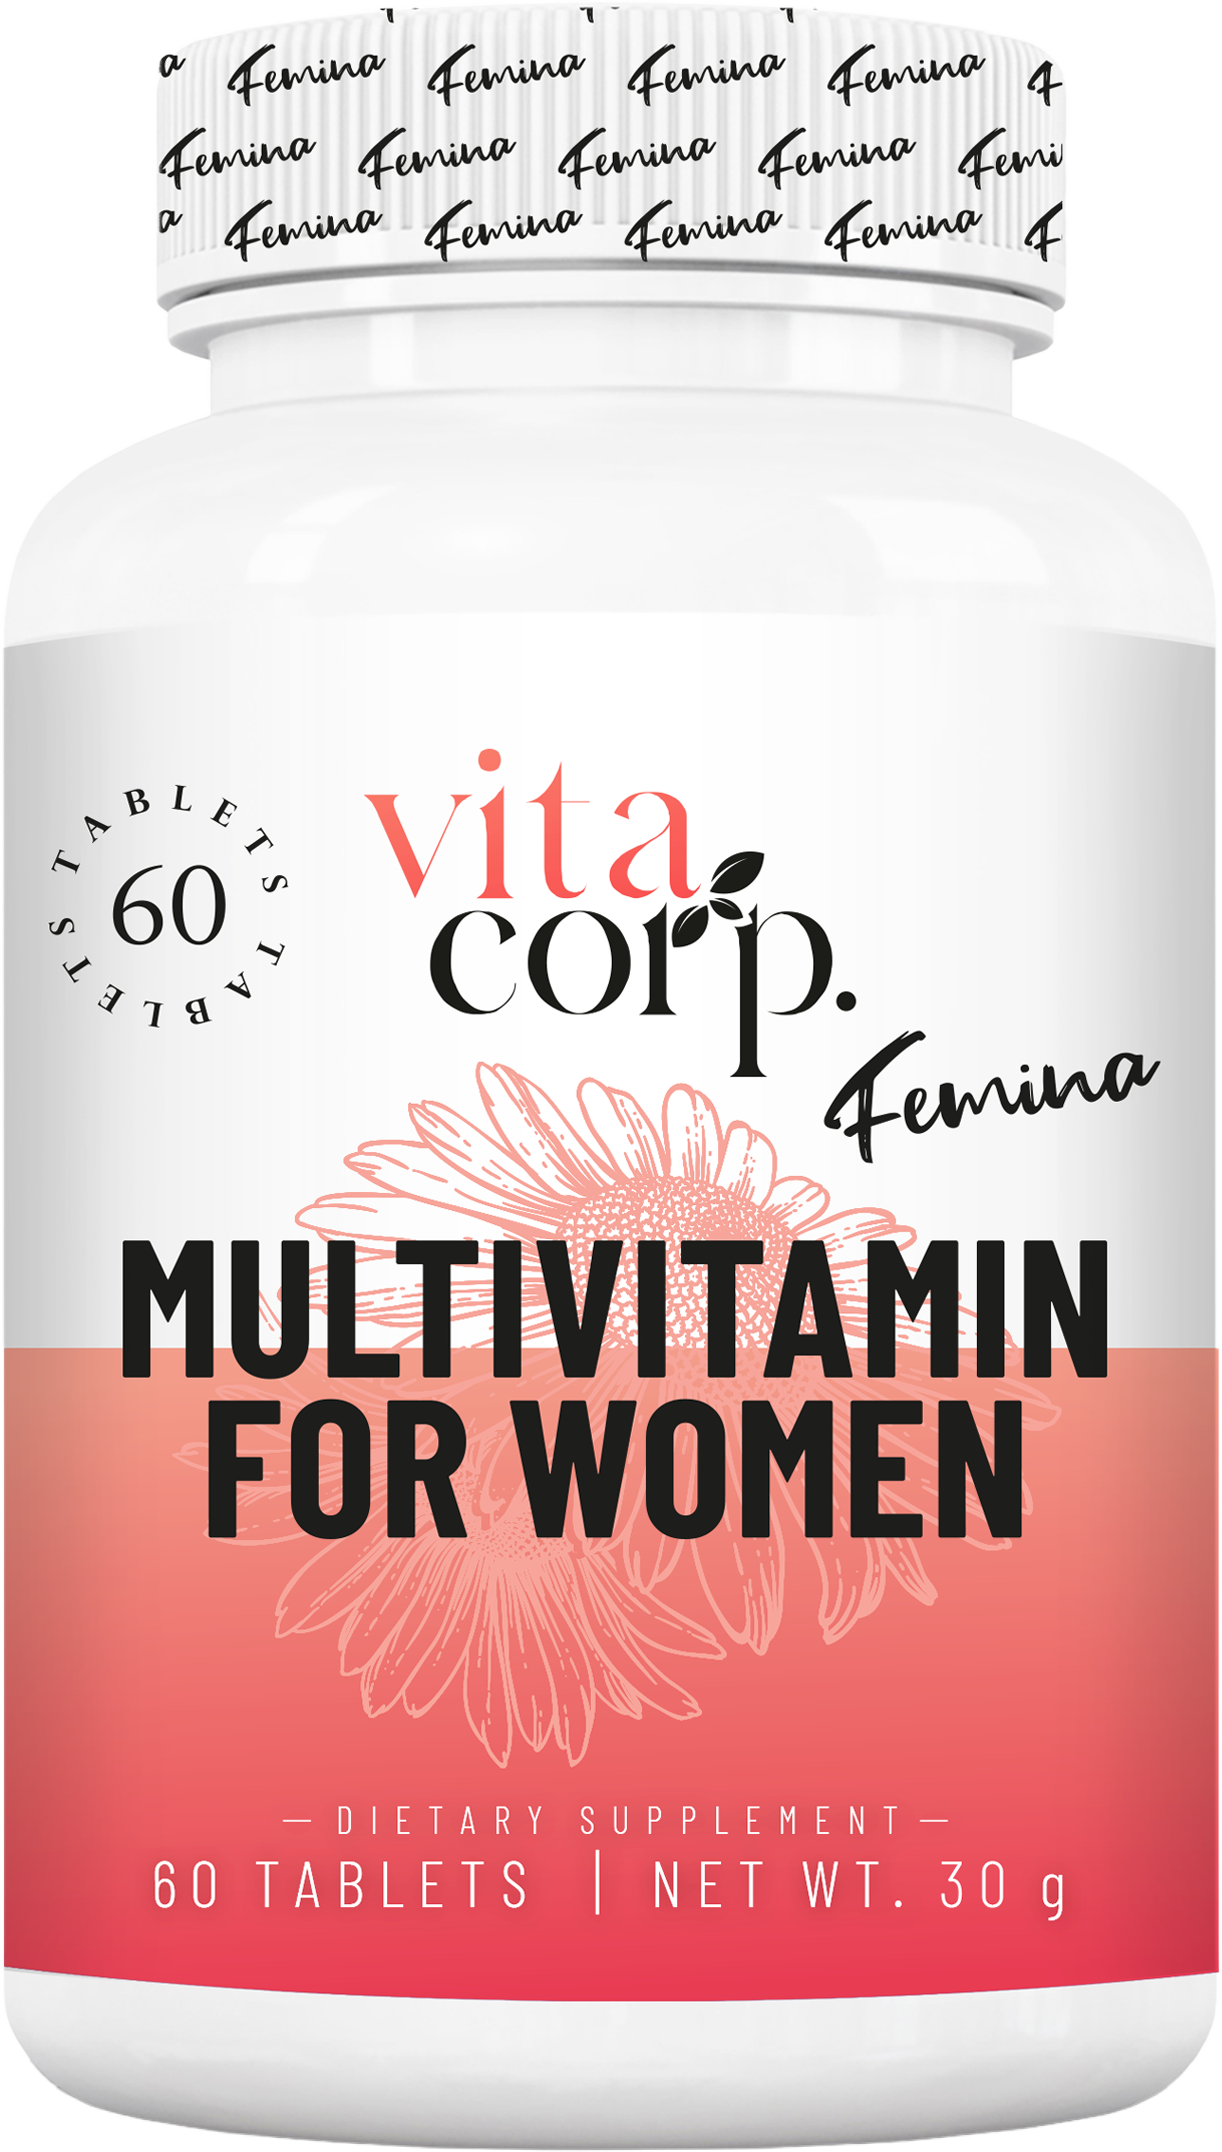 Femina MultiVitamin for Women - BadiZdrav.BG